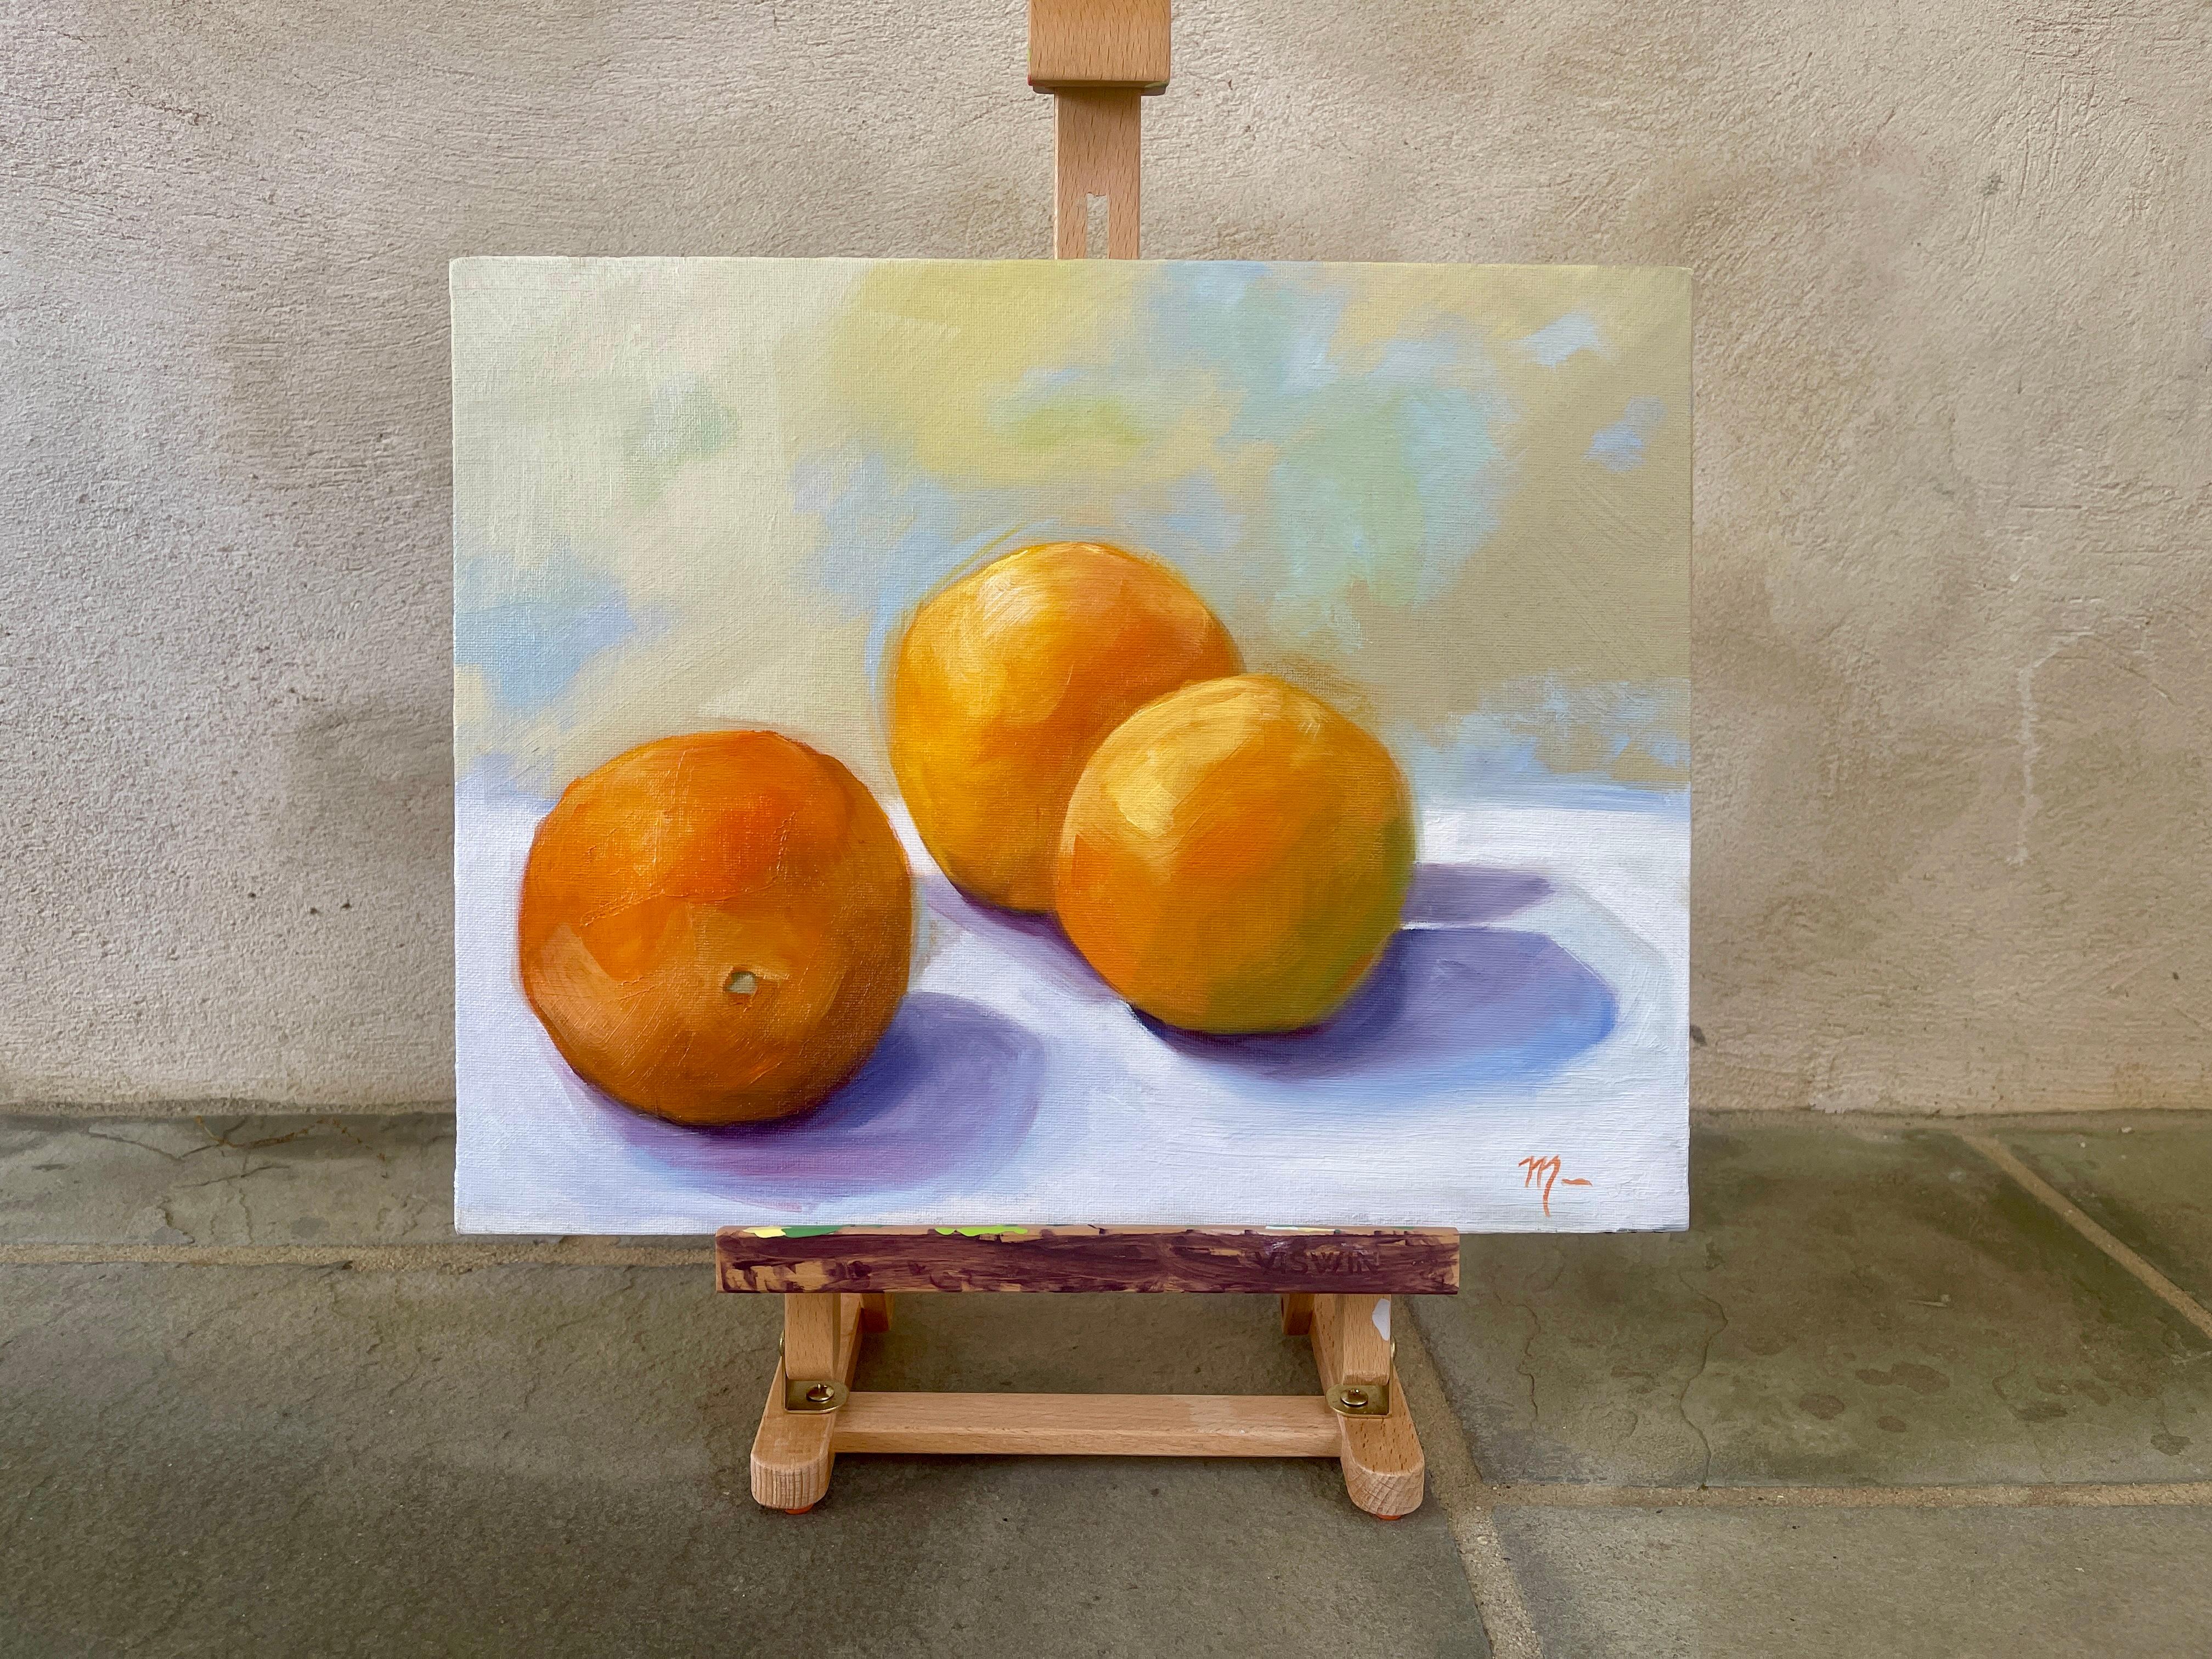 <p>Kommentare des Künstlers<br>Drei Zitrusfrüchte werfen in diesem Stillleben lavendelfarbene Schatten. Das Gleichgewicht zwischen Form und zartem Licht mit den sanften Farben ruft eine ruhige Atmosphäre hervor. Das Gemälde fängt die Schönheit der